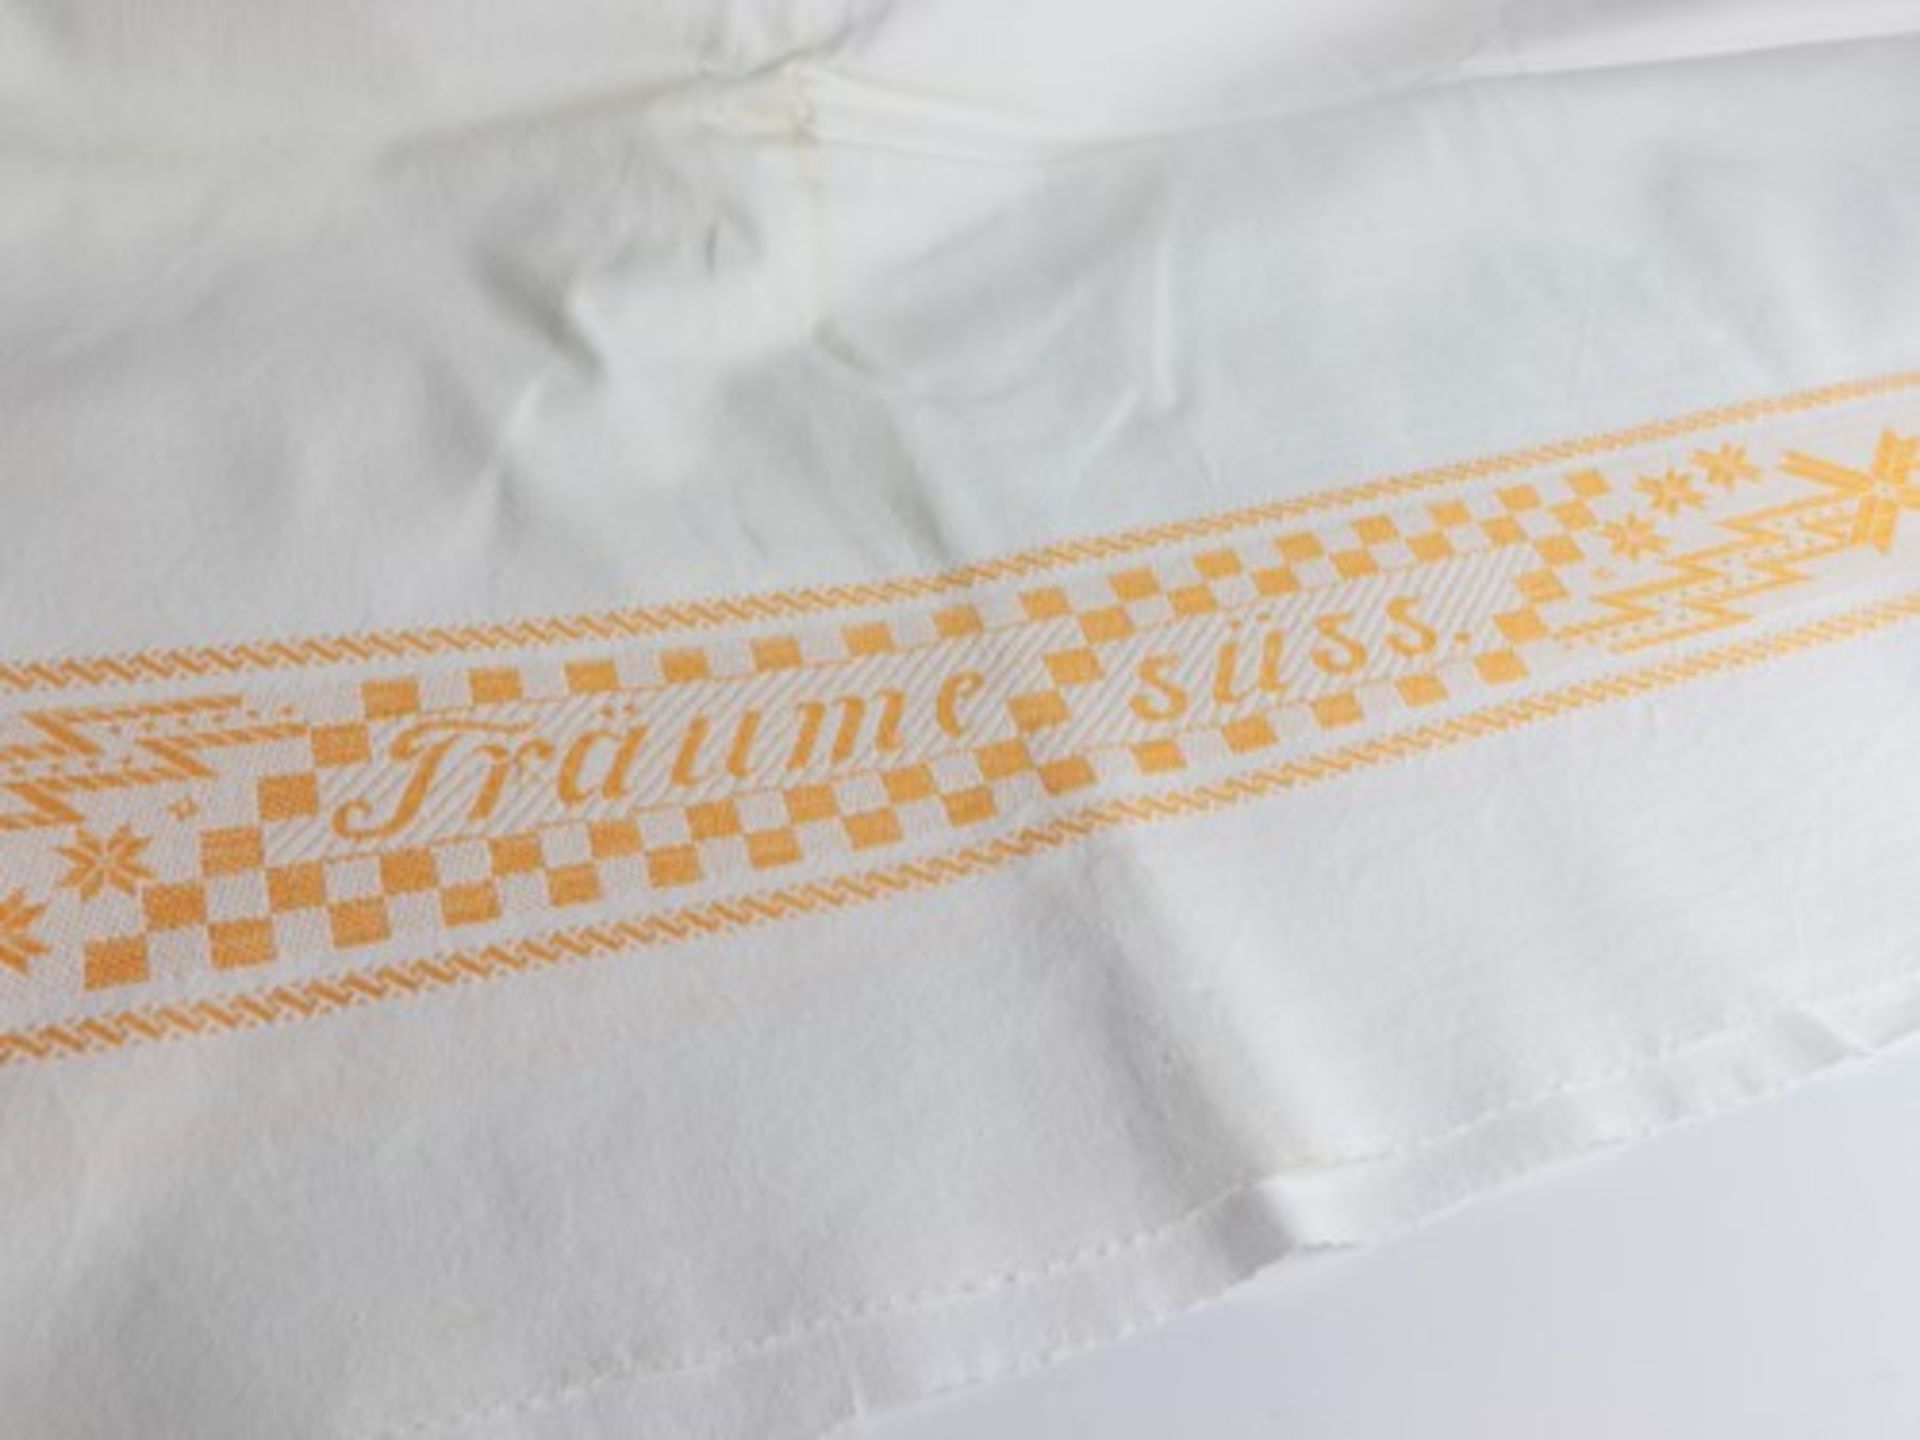 Bettlaken - Paarweiße Baumwolle, eingewebte Dekorstreifen in gelb, Spruch: "Träume süss", gewaschen - Image 3 of 3